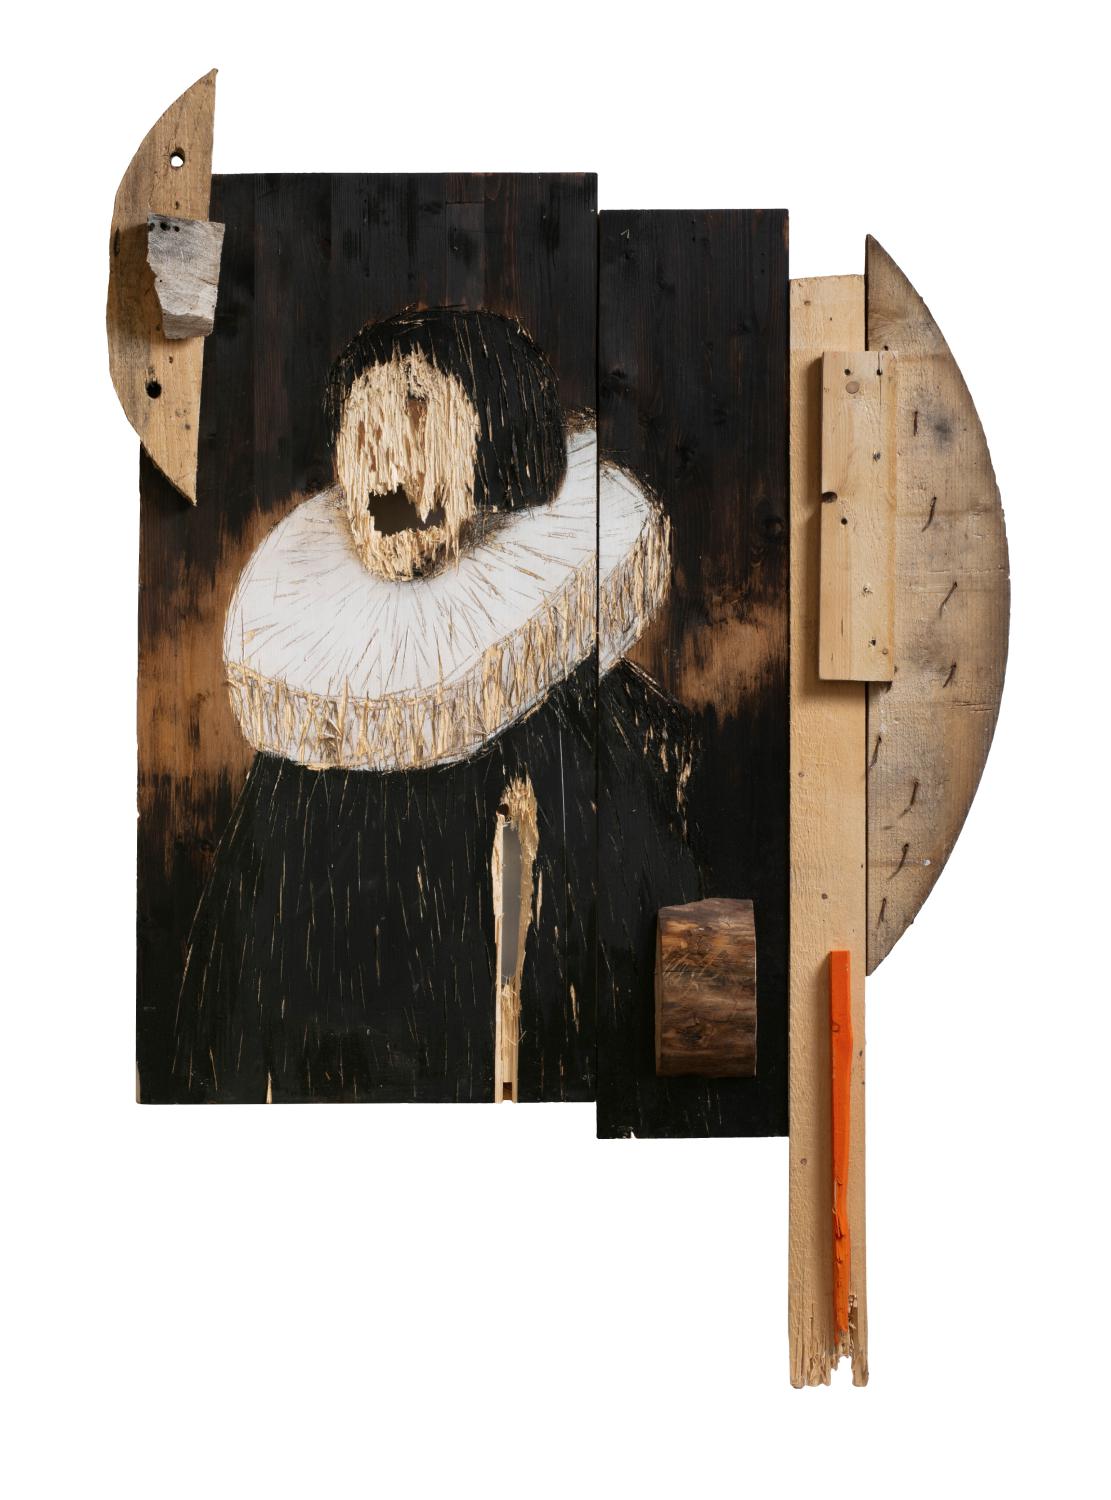 Нестор Энгельке,&nbsp;&laquo;Деревянный голландский портрет номер 9&raquo;